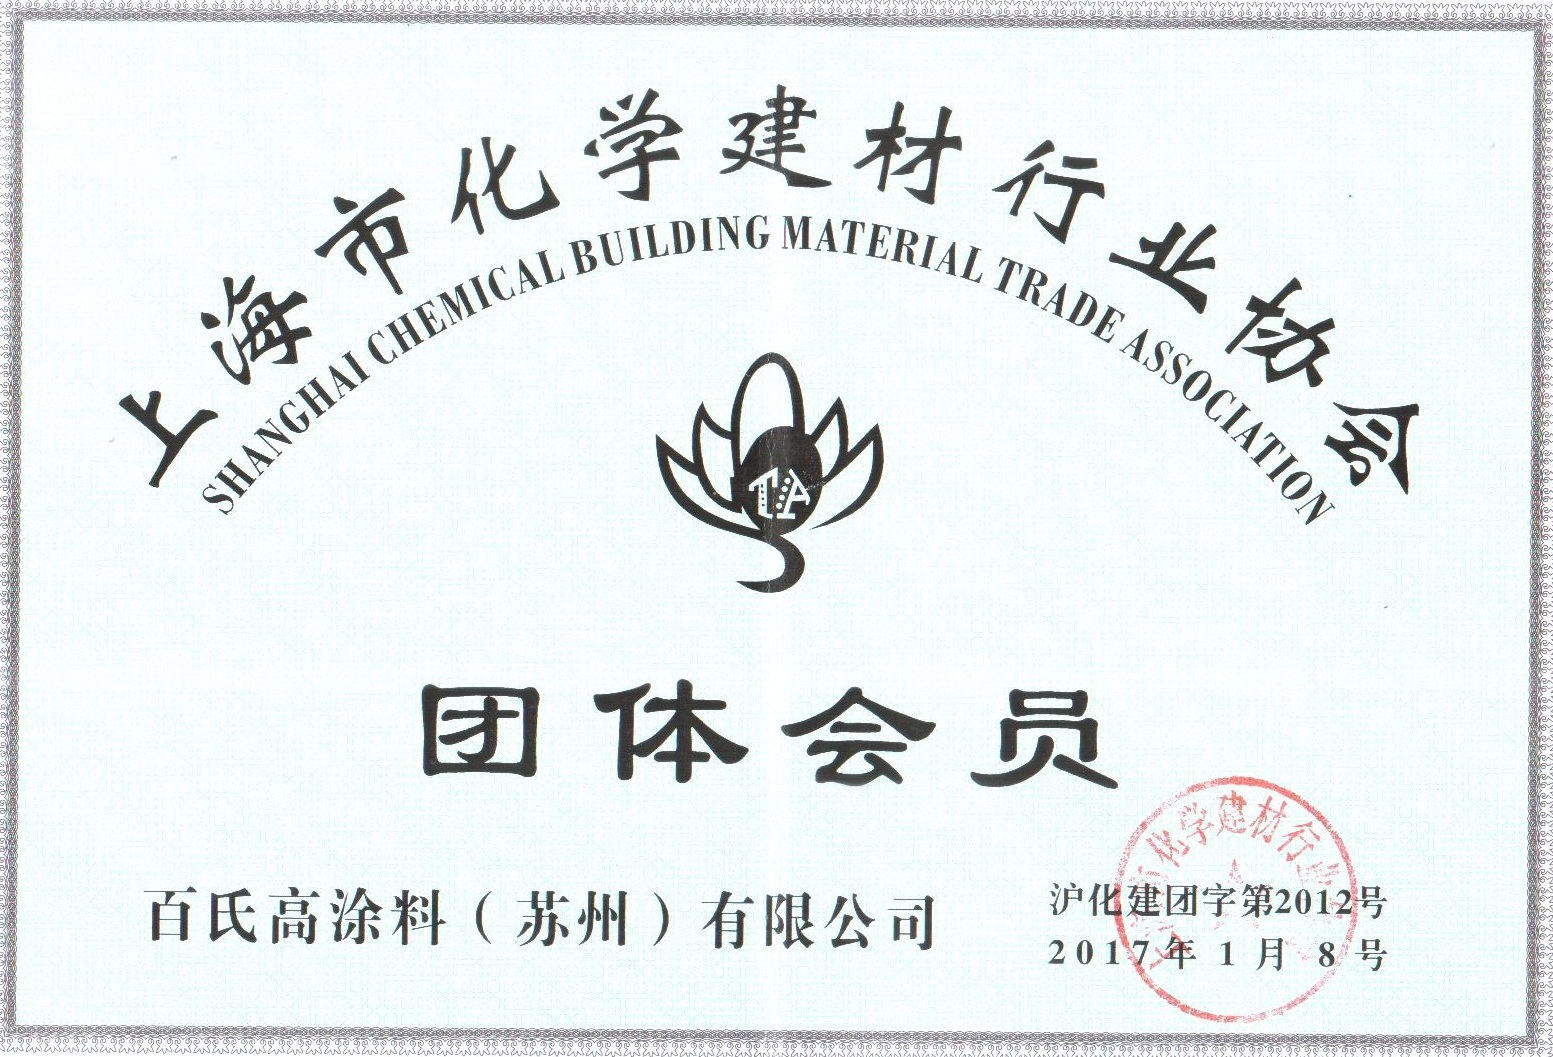 上海化学建材协会会员